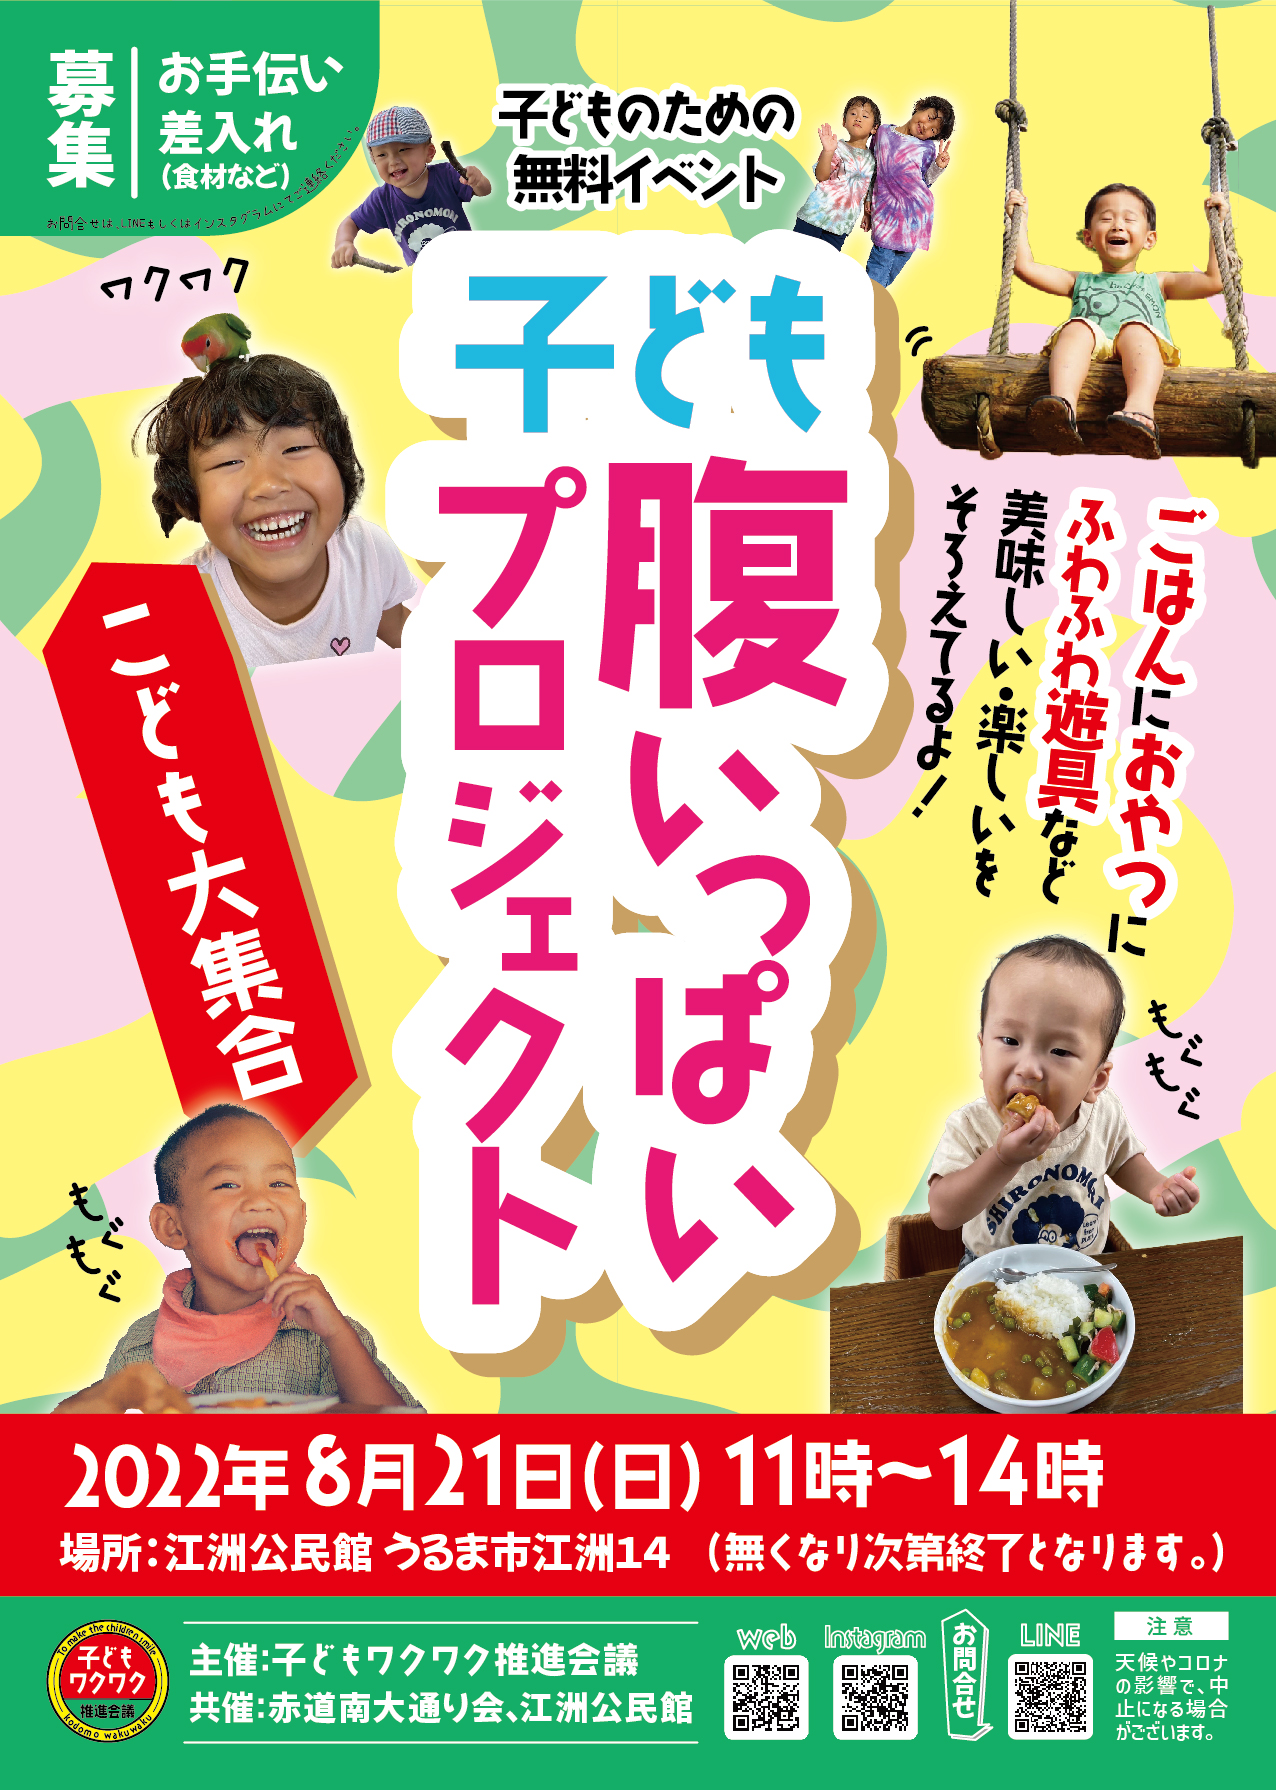 2022.08.21(日)「子ども腹いっぱいプロジェクト」開催決定!!